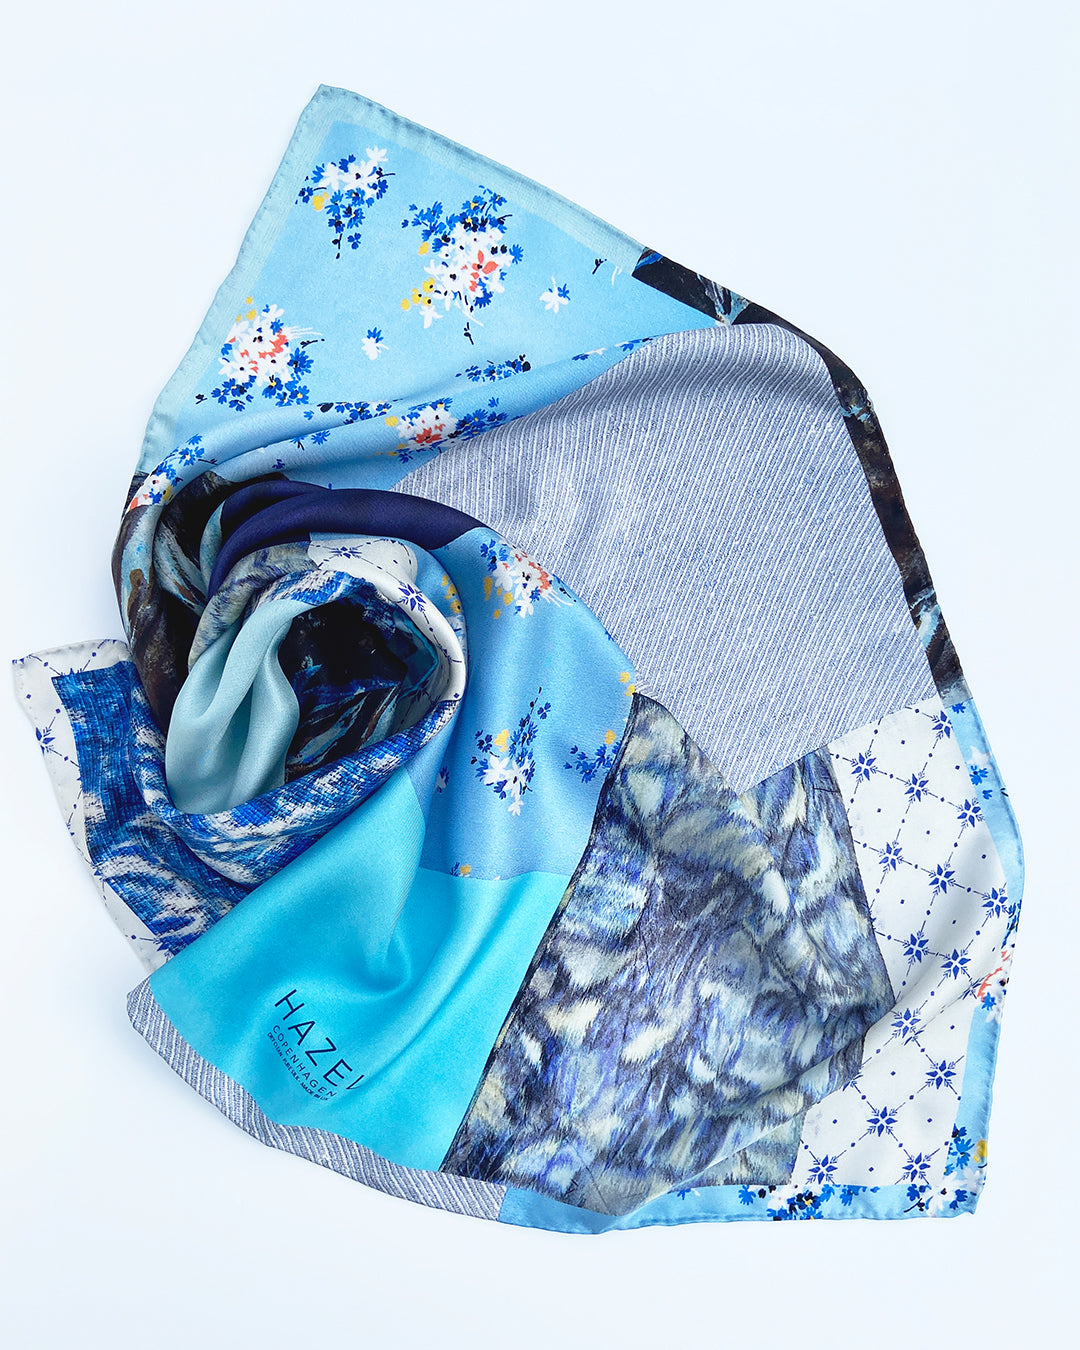 Kvadratisk silketørklæde med blå blomster, silketørklæde i lys blå, silketørklæde med patchworkmønster, Silketørklæde blå farver, Silketørklæde lys blå, silketørklæde multifarvet blåt. silketørklæde med mørk blå farve,  Silketørklæde kvadratisk 65 x 65 cm, Silketørklæde i 100 % ren silke, silketørklæde i ægte silke twill, silketørklæde med design af Susanne Schjerning, silketørklæde med rullede kanter. Giv et silketørklæde i gave. Bæredygtigt silketørklæde i dansk design.